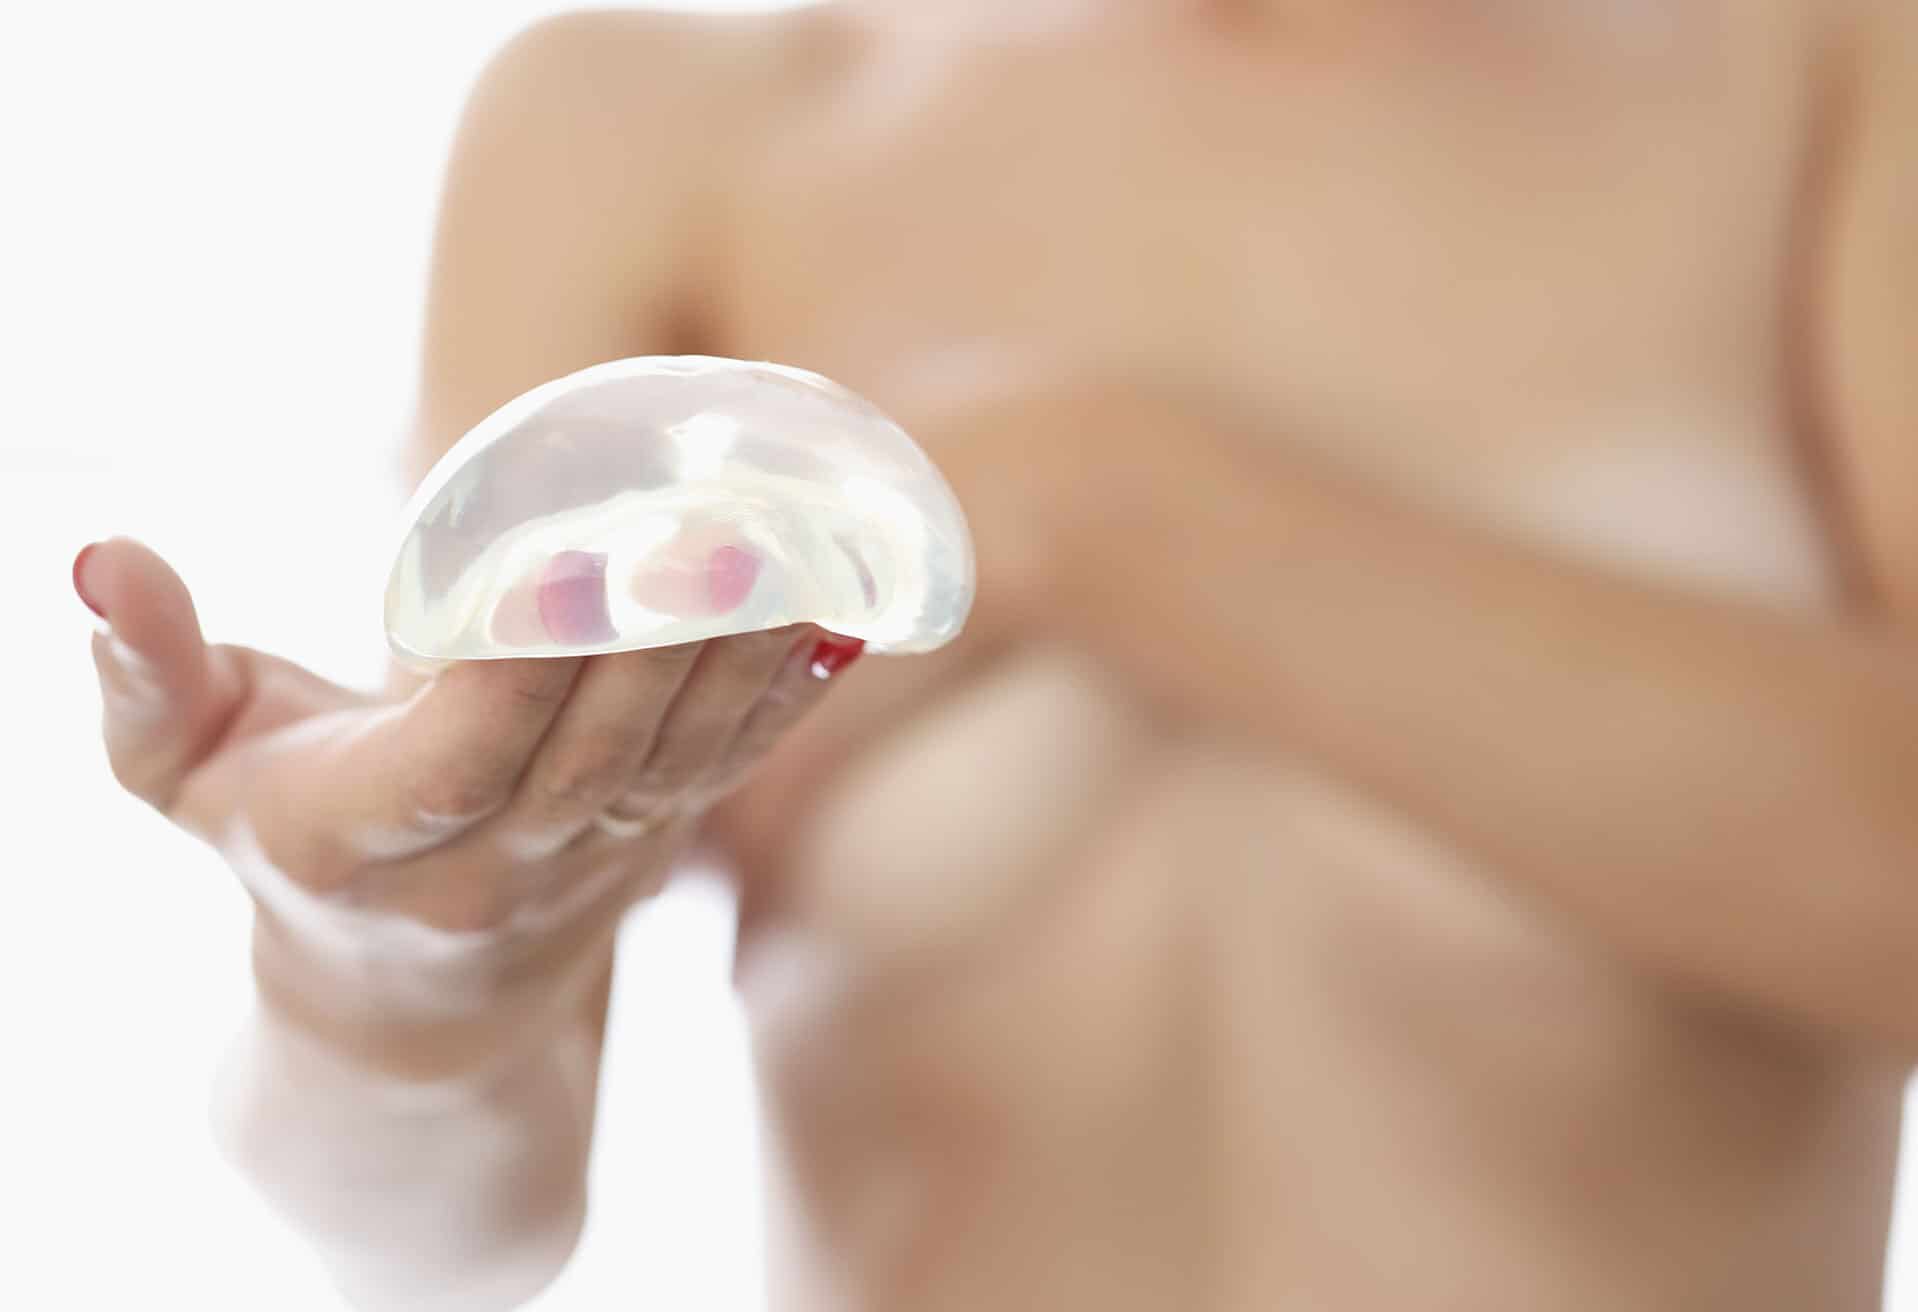 Amélioration des prothèses mammaires | Institut du Sein Paris